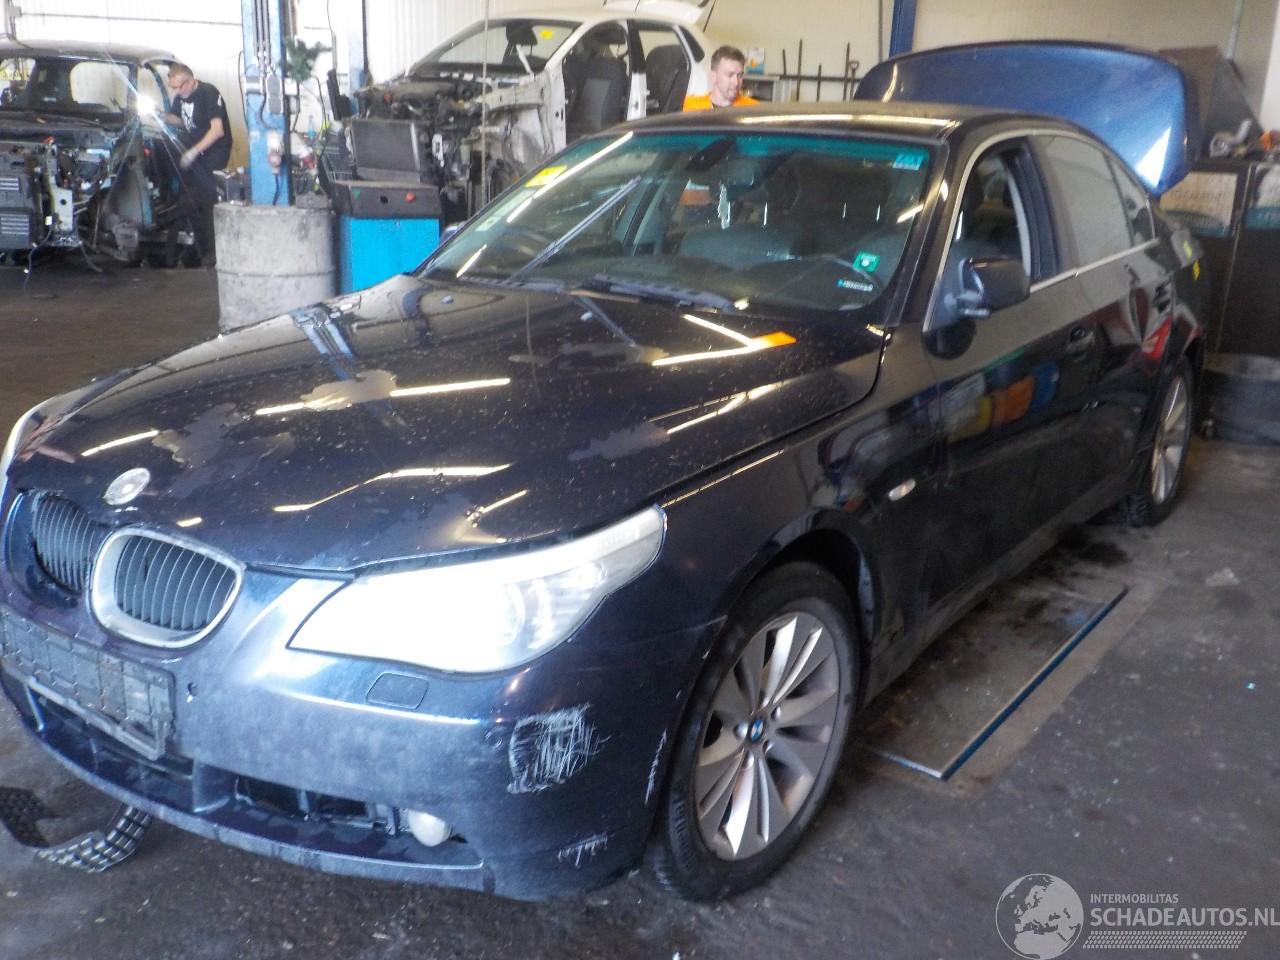 BMW 5-serie 5 serie (E60) Sedan 530d 24V (M57N-D30(306D2)) [160kW]  (07-2003/09-20=
05)